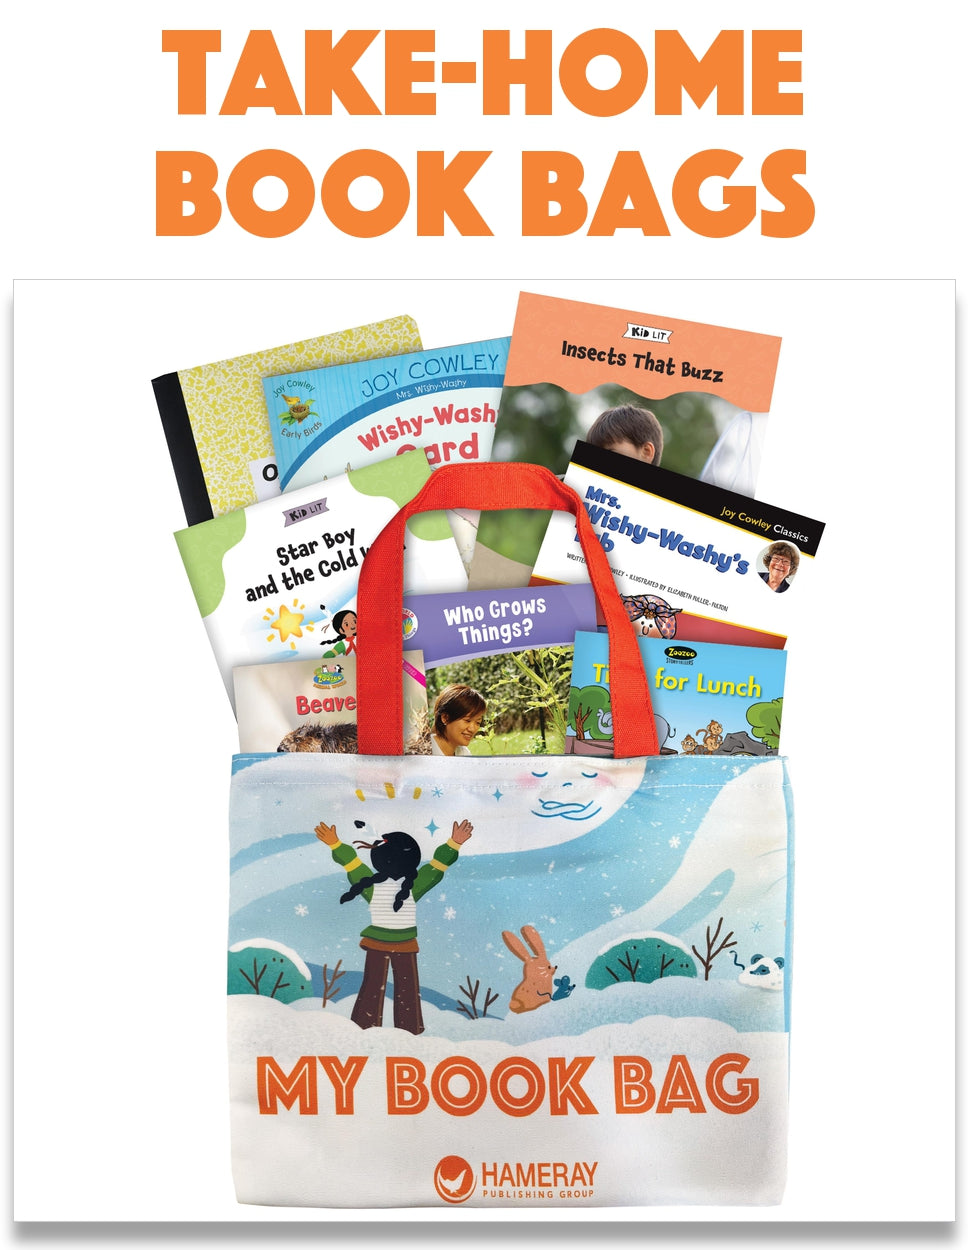 Take-Home Book Bags